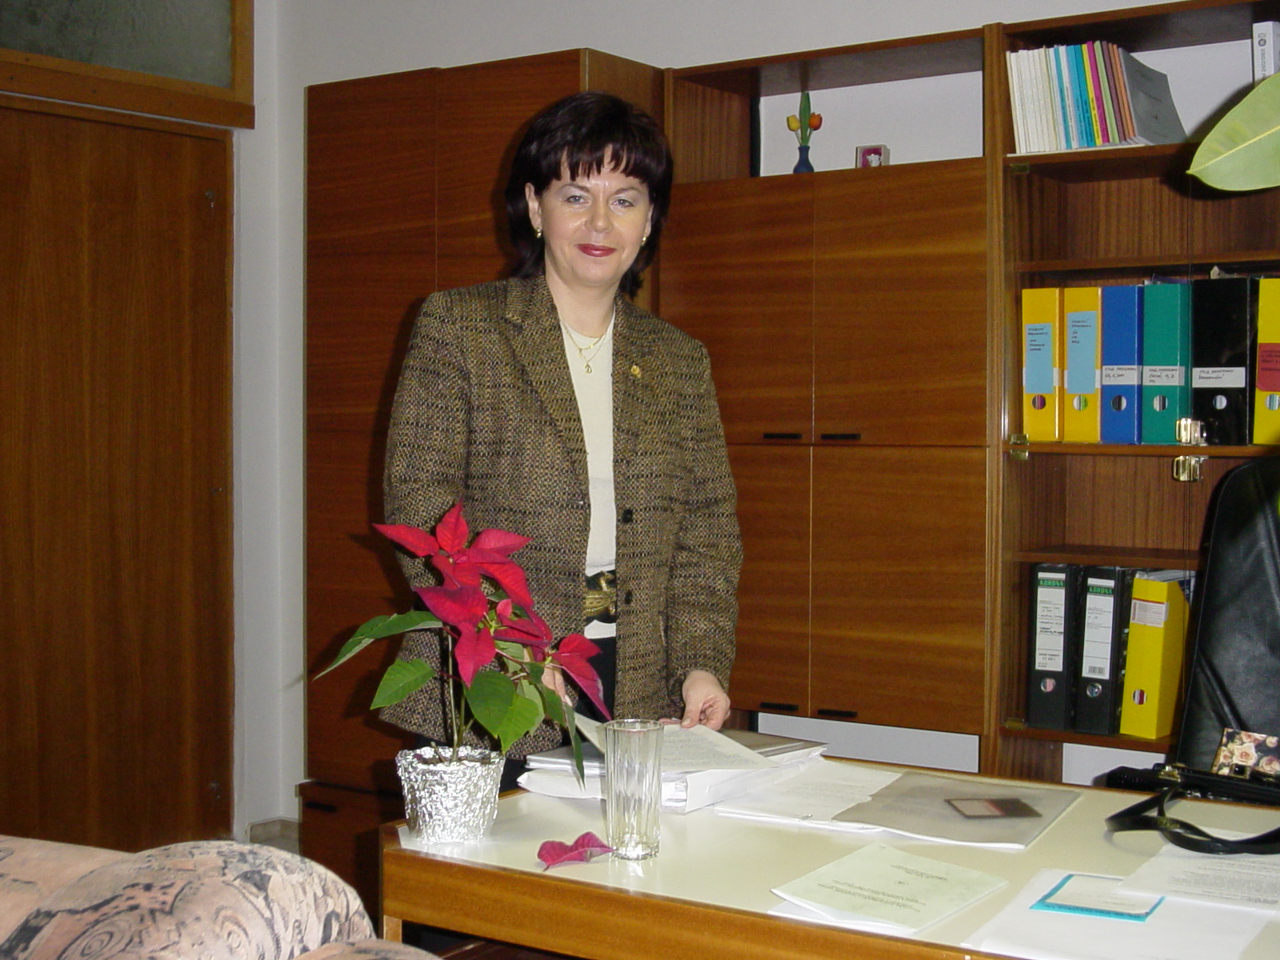 doc. Ing. Dana Zadražilová, CSc.
Prorektorka pro studijní a pedagogickou činnost od 1. února 2000 do 31. ledna 2003